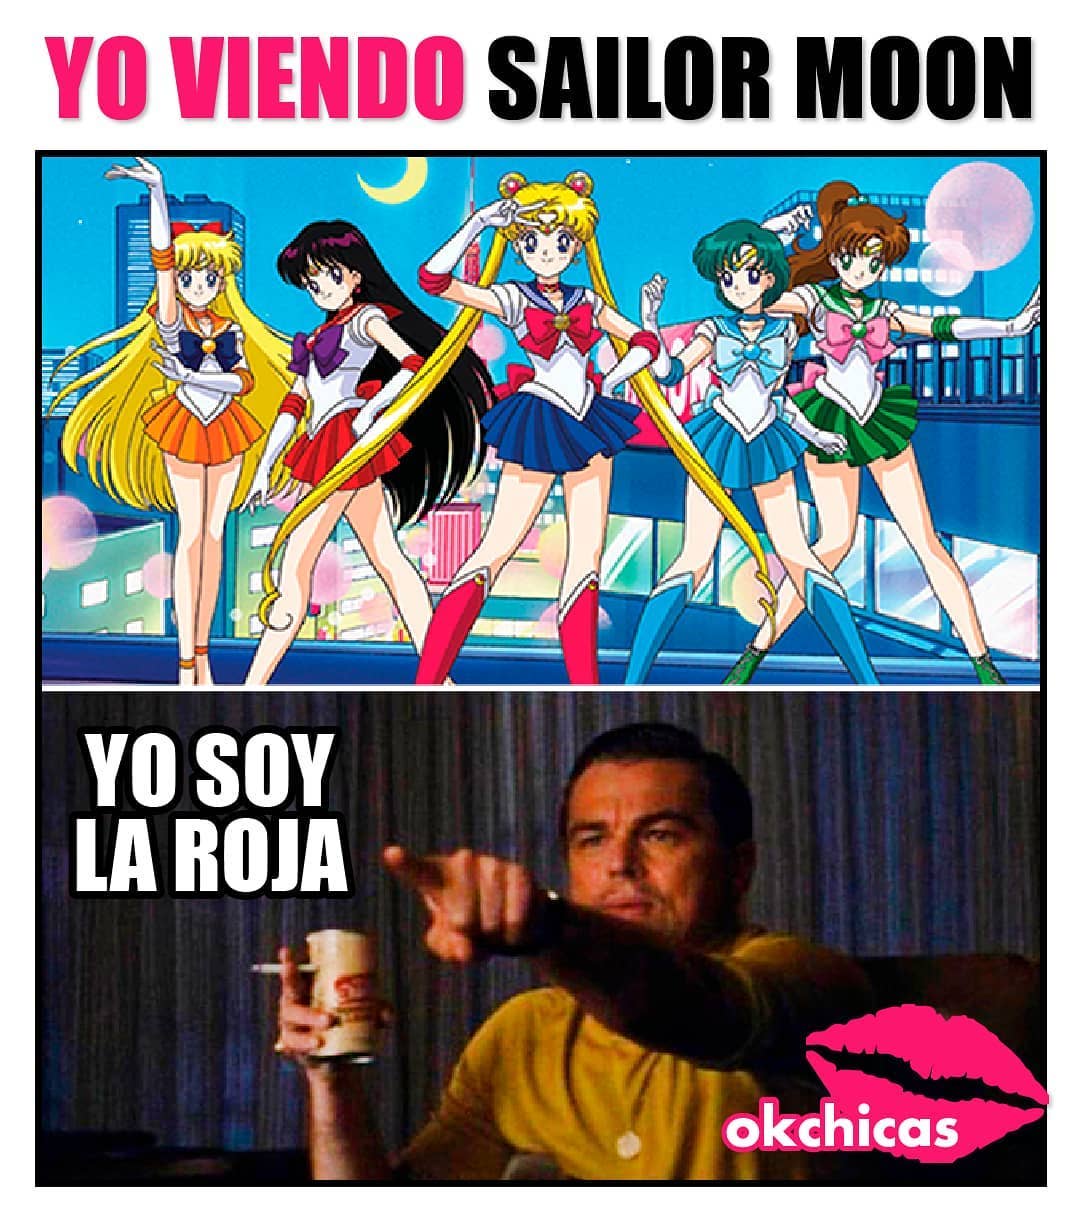 Yo viendo Sailor Moon.  Yo soy la roja.